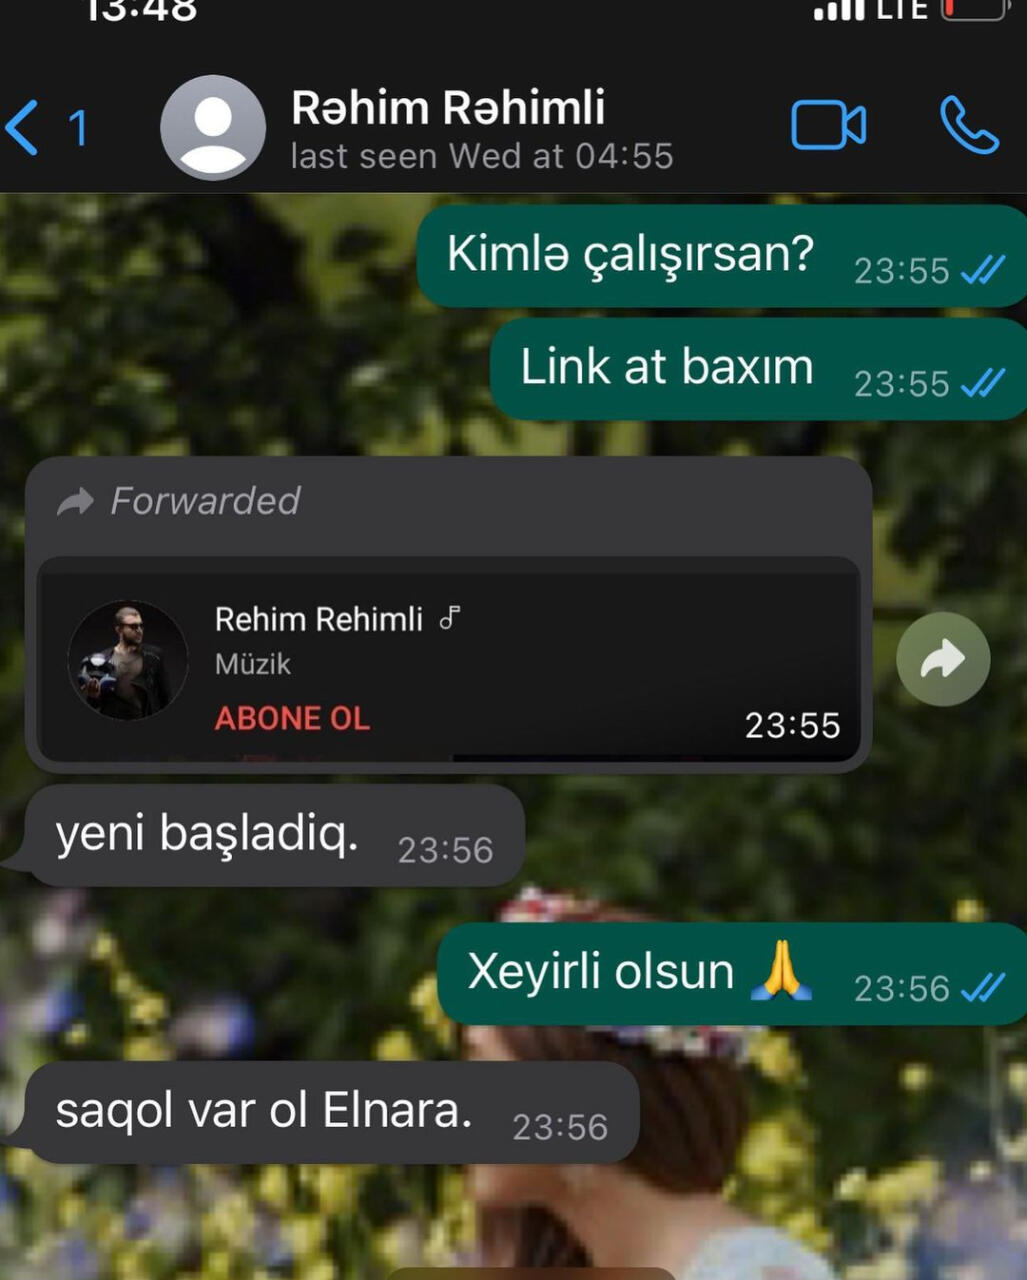 Rəhim Rəhimlinin son "Whatsapp" yazışmaları